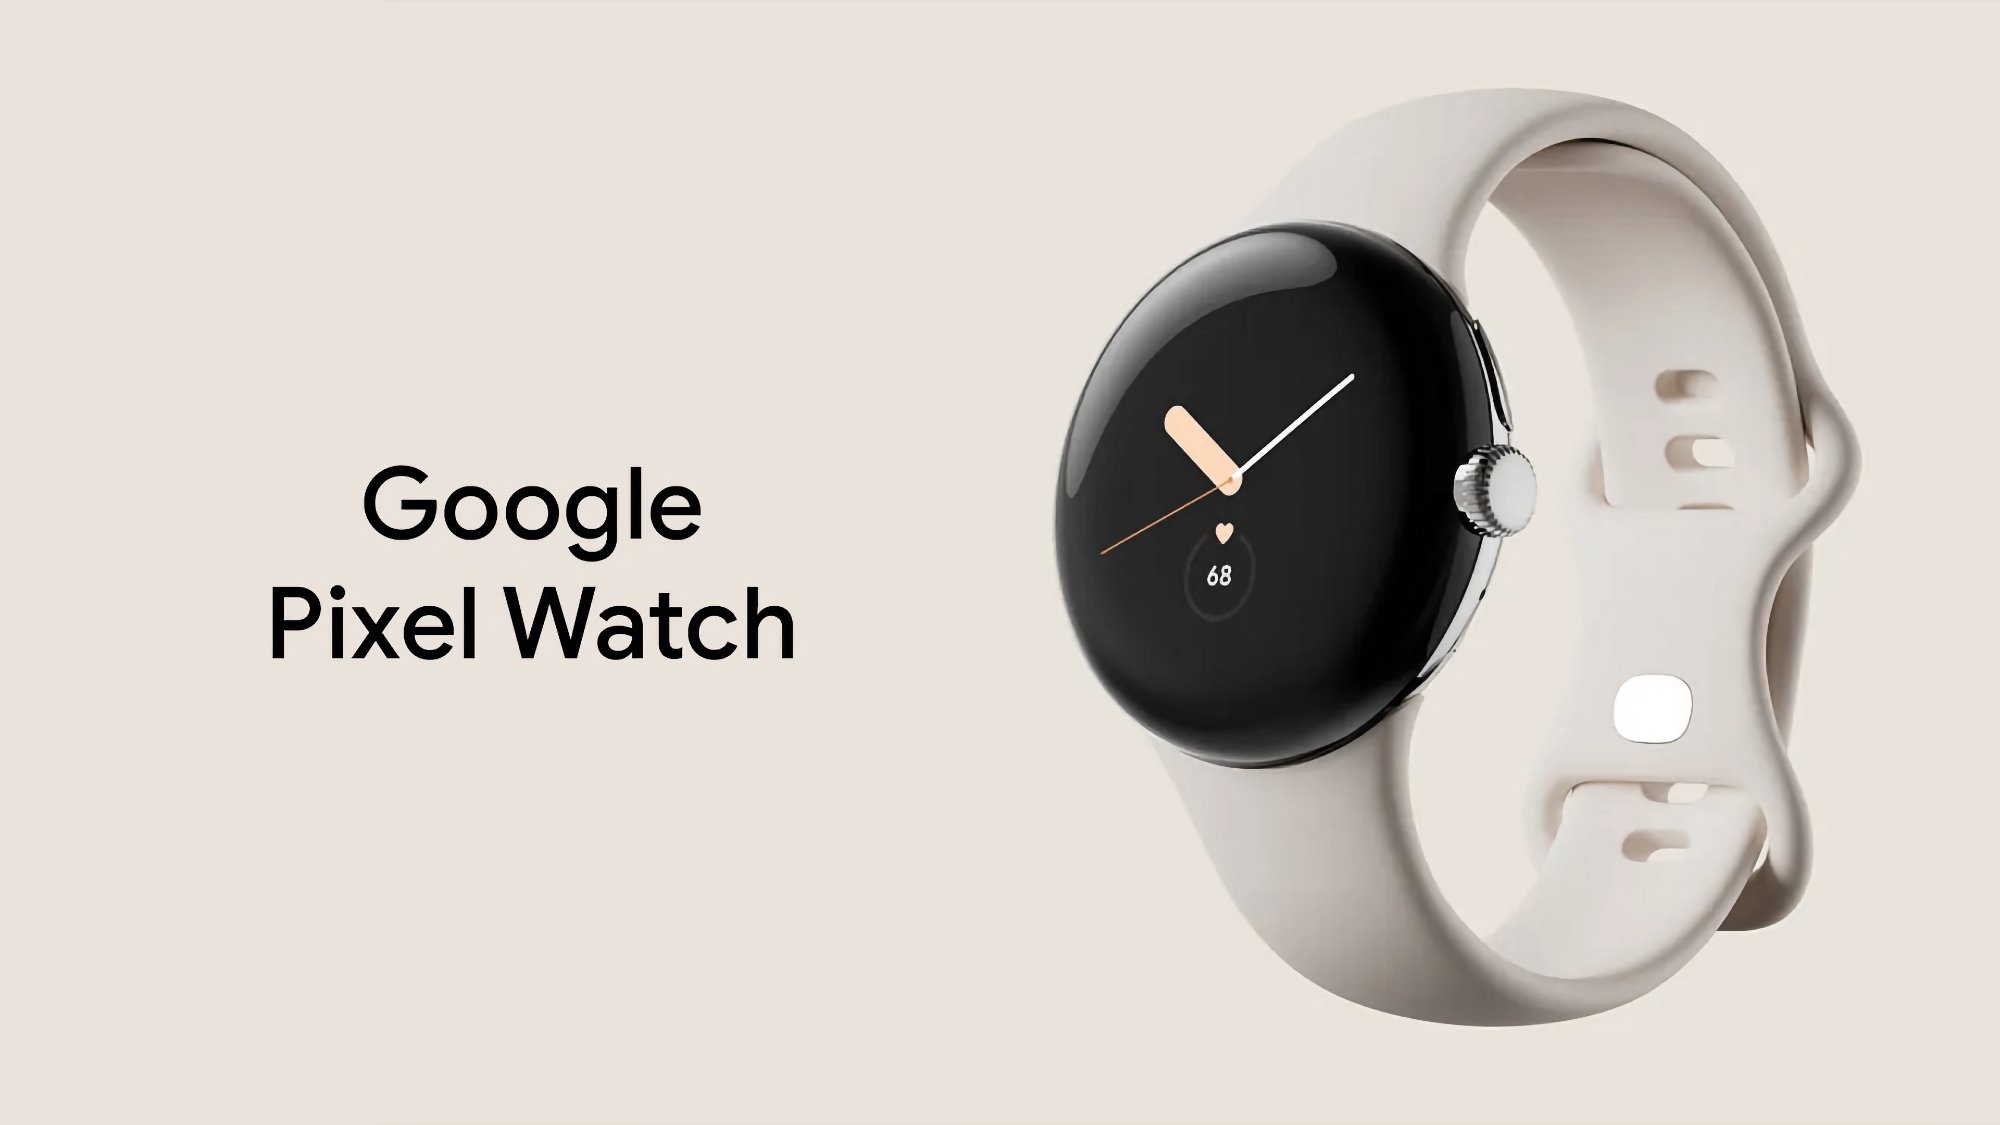 Verbesserte Fitbit-Funktionen und Behebung von Fehlern: Google veröffentlicht erstes Update für Pixel Watch-Begleiter-App